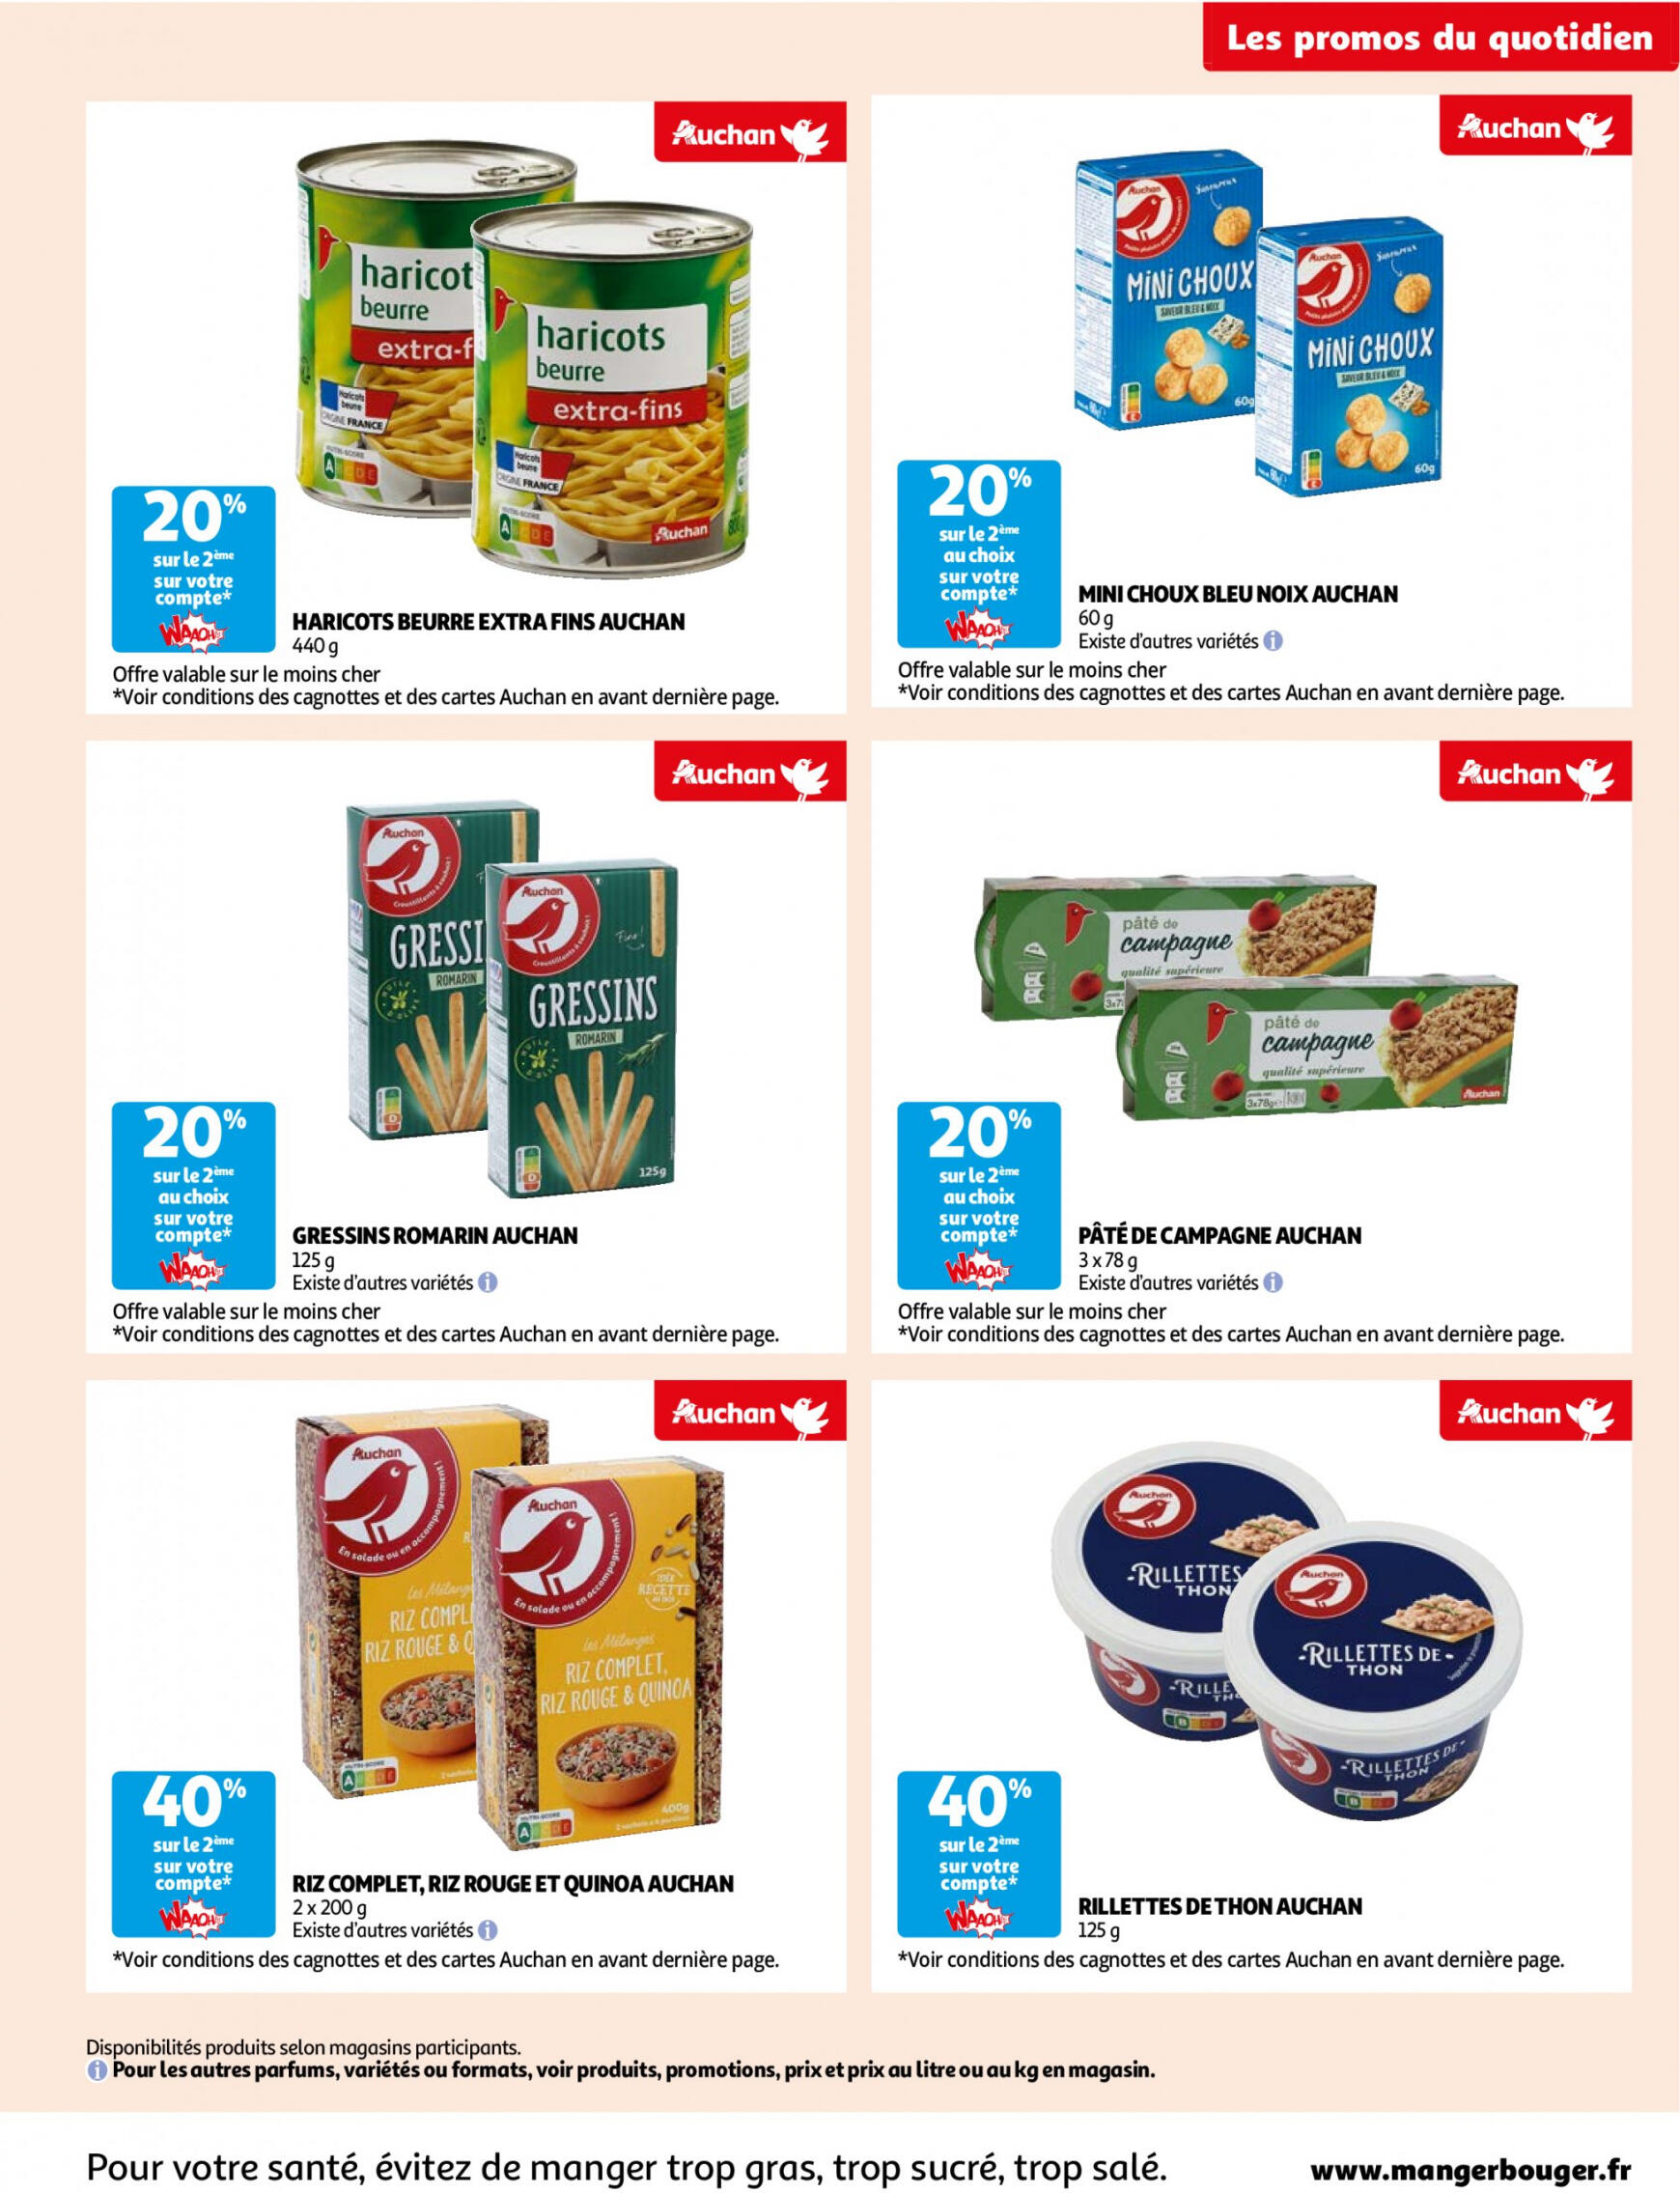 auchan - Auchan - Des économies au quotidien folder huidig 14.05. - 03.06. - page: 7